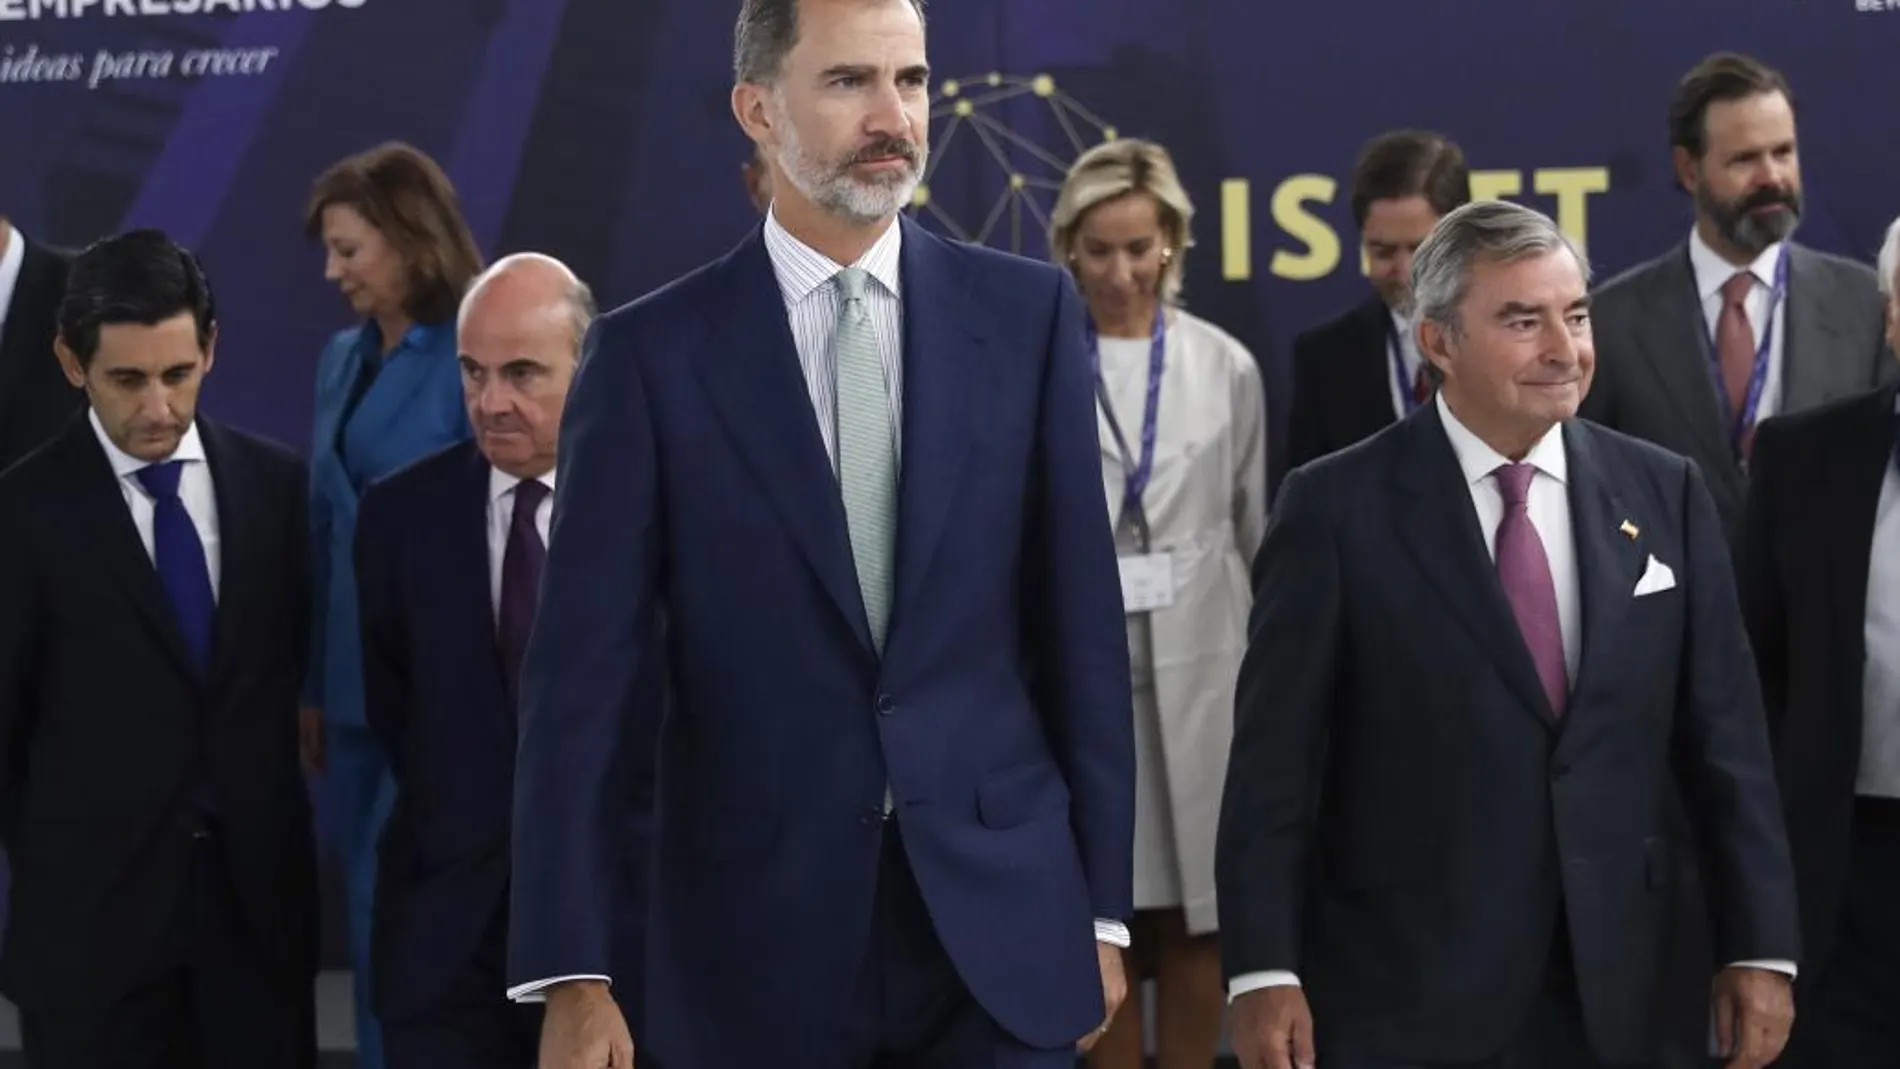 El Rey Felipe tras posar para la foto de familia durante la inauguración de la XXIX Cumbre Internacional de Centros de Pensamiento Empresariales (ISBTT), organizada por el Círculo de Empresarios, hoy en Madrid. EFE/Emilio Naranjo